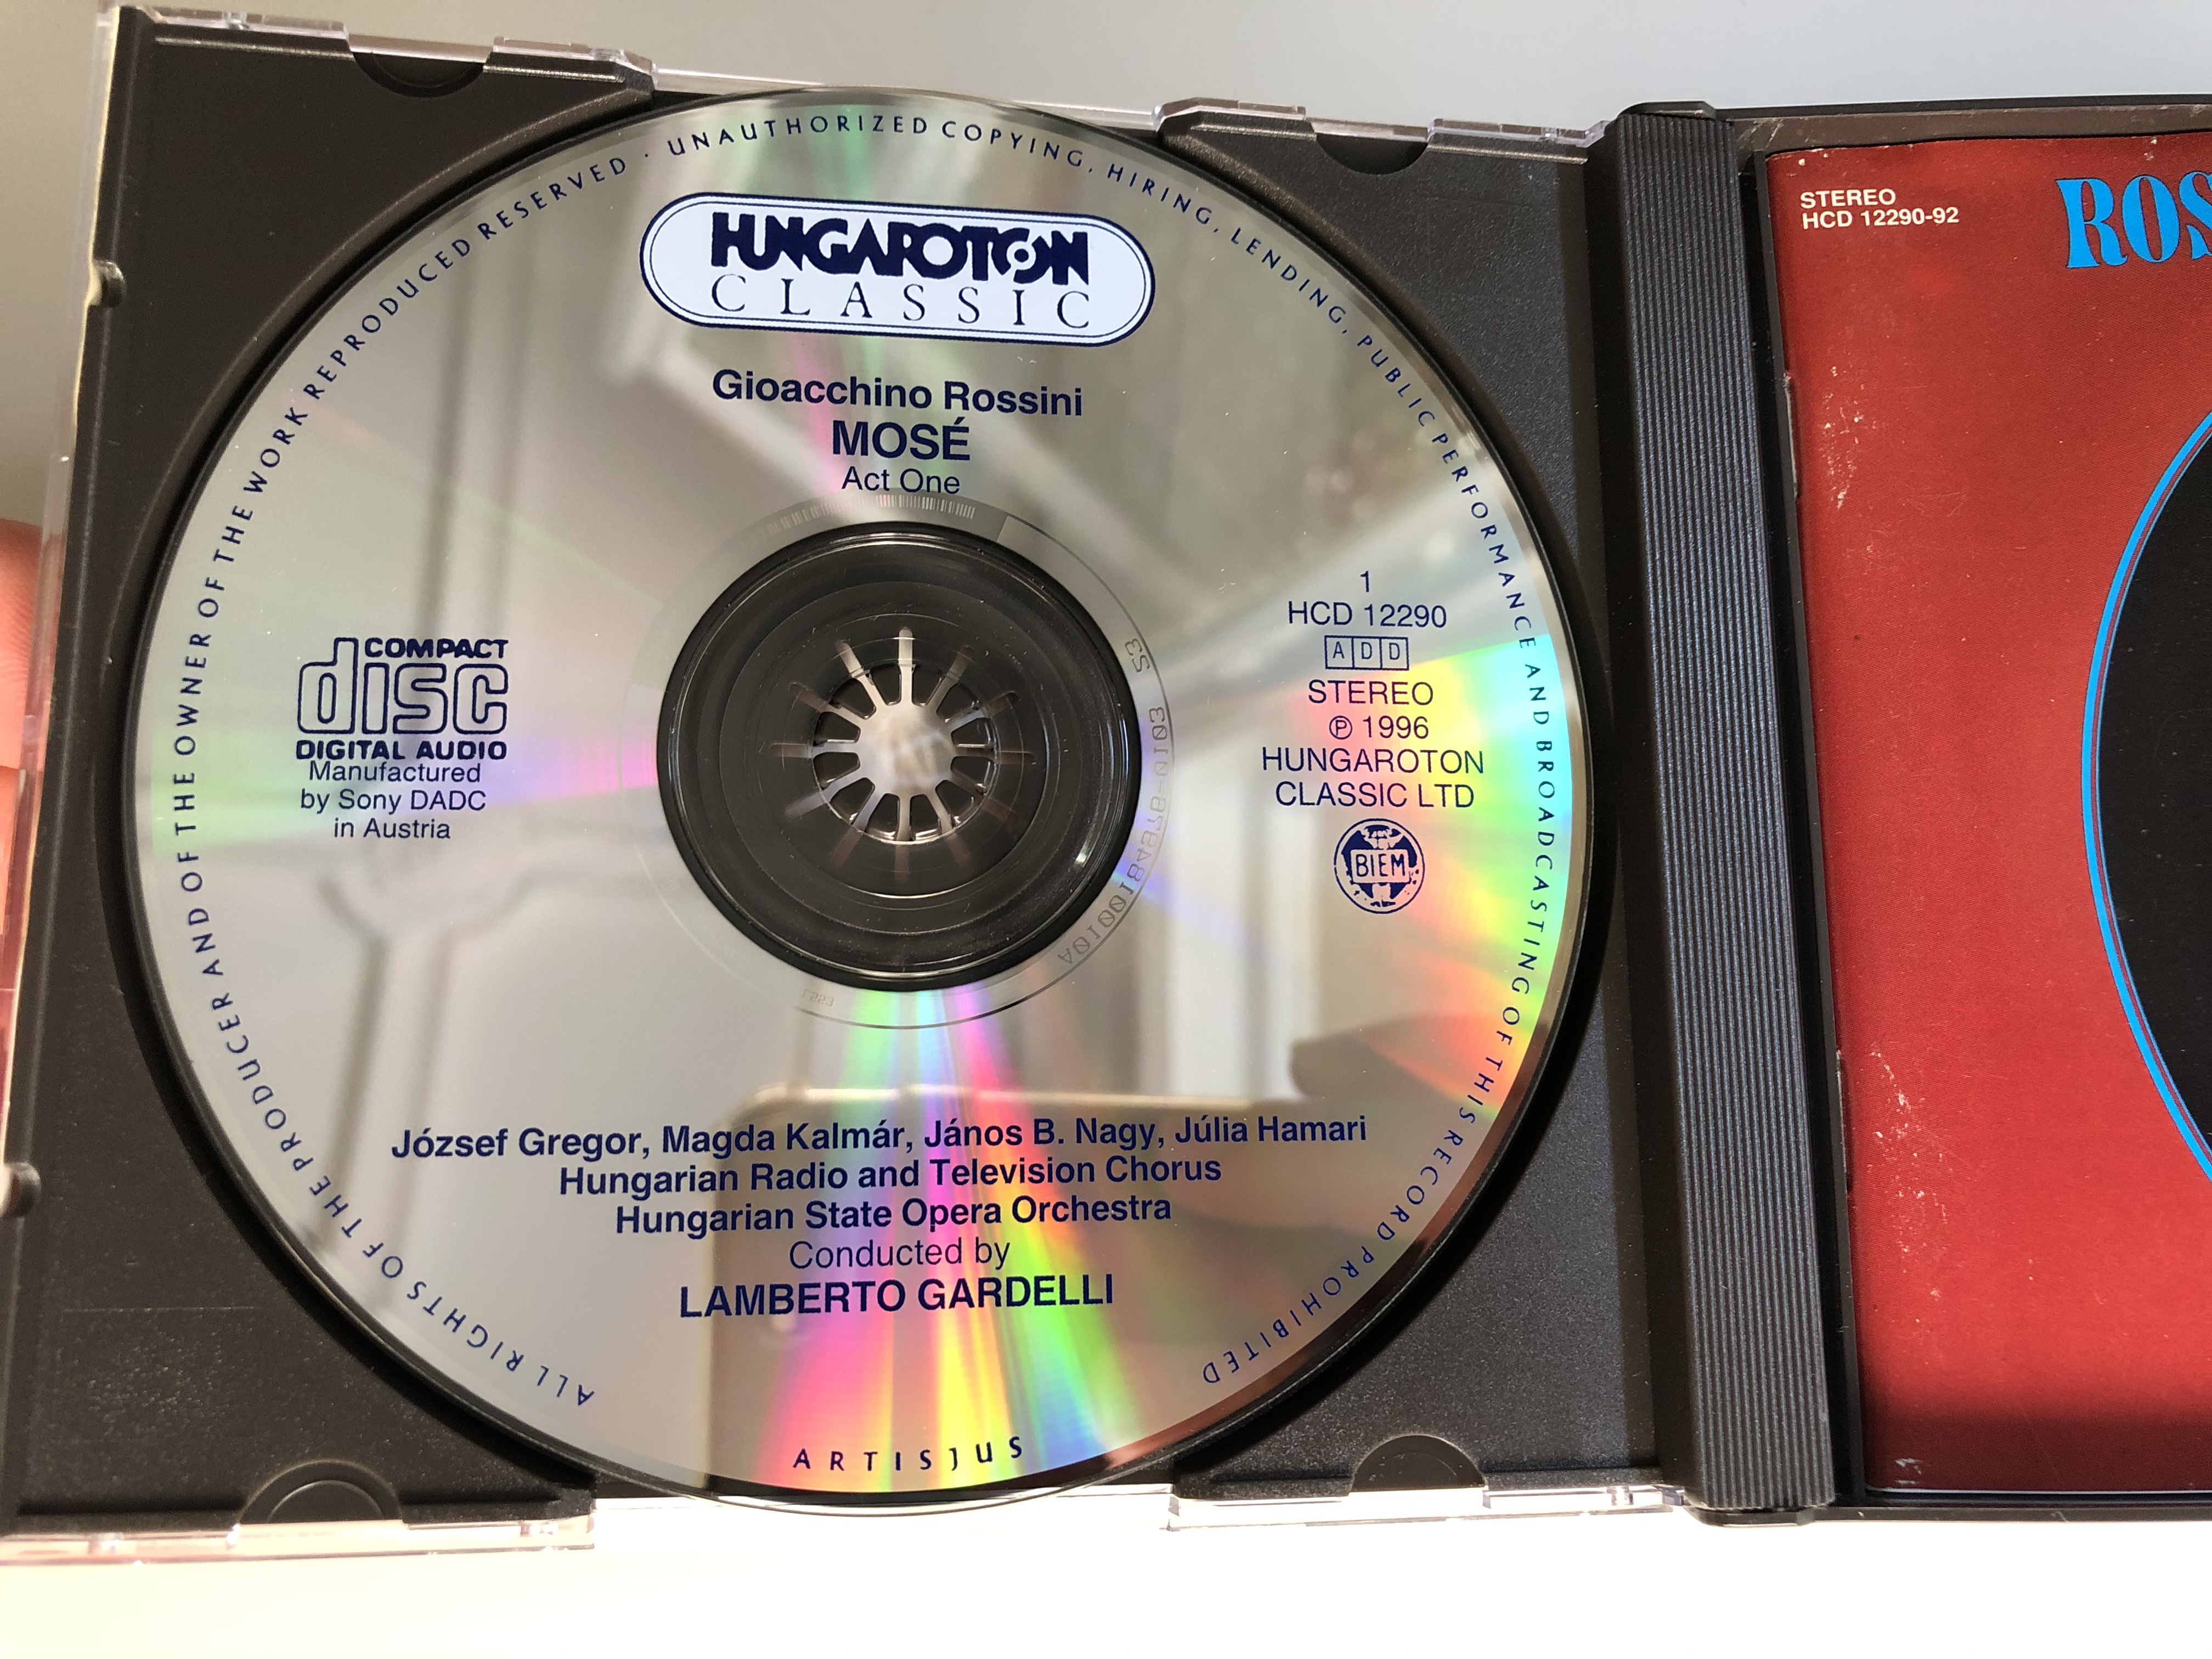 rossini-mos-j-zsef-gregor-magda-kalm-r-janos-b.-nagy-julia-hamari-s-ndor-s-lyom-nagy-lamberto-gardelli-hungaroton-classic-3x-audio-cd-1996-stereo-hcd-12290-92-3-.jpg